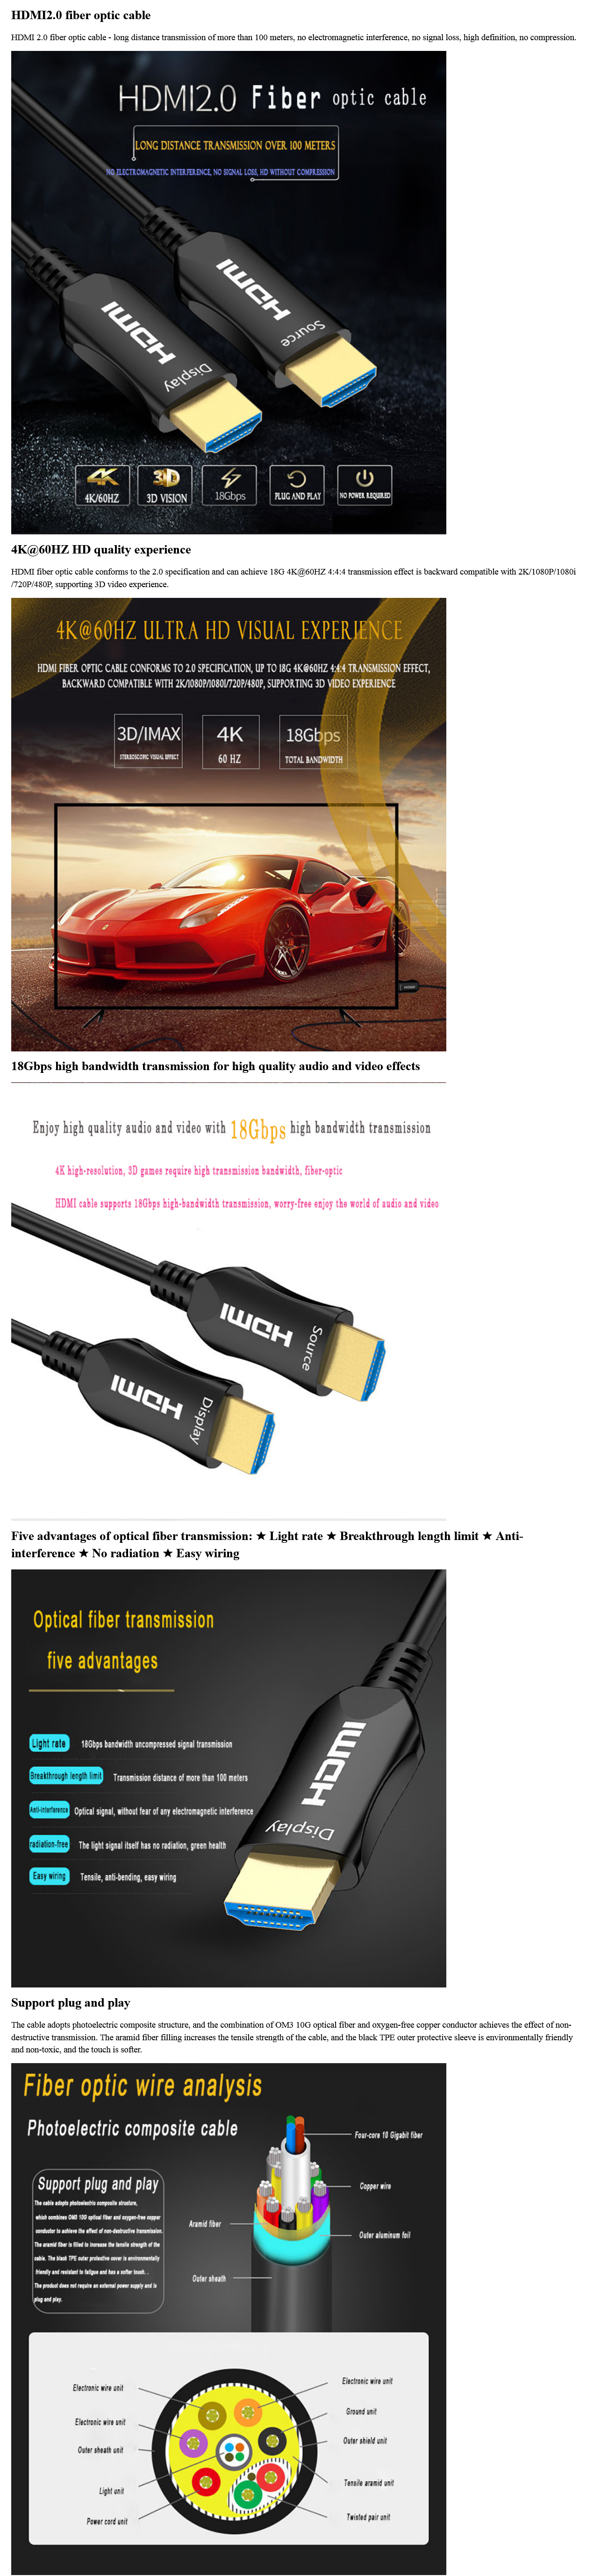 Câble HDMI 2.0 - 20m - plaqué or - CARON Informatique - Calais